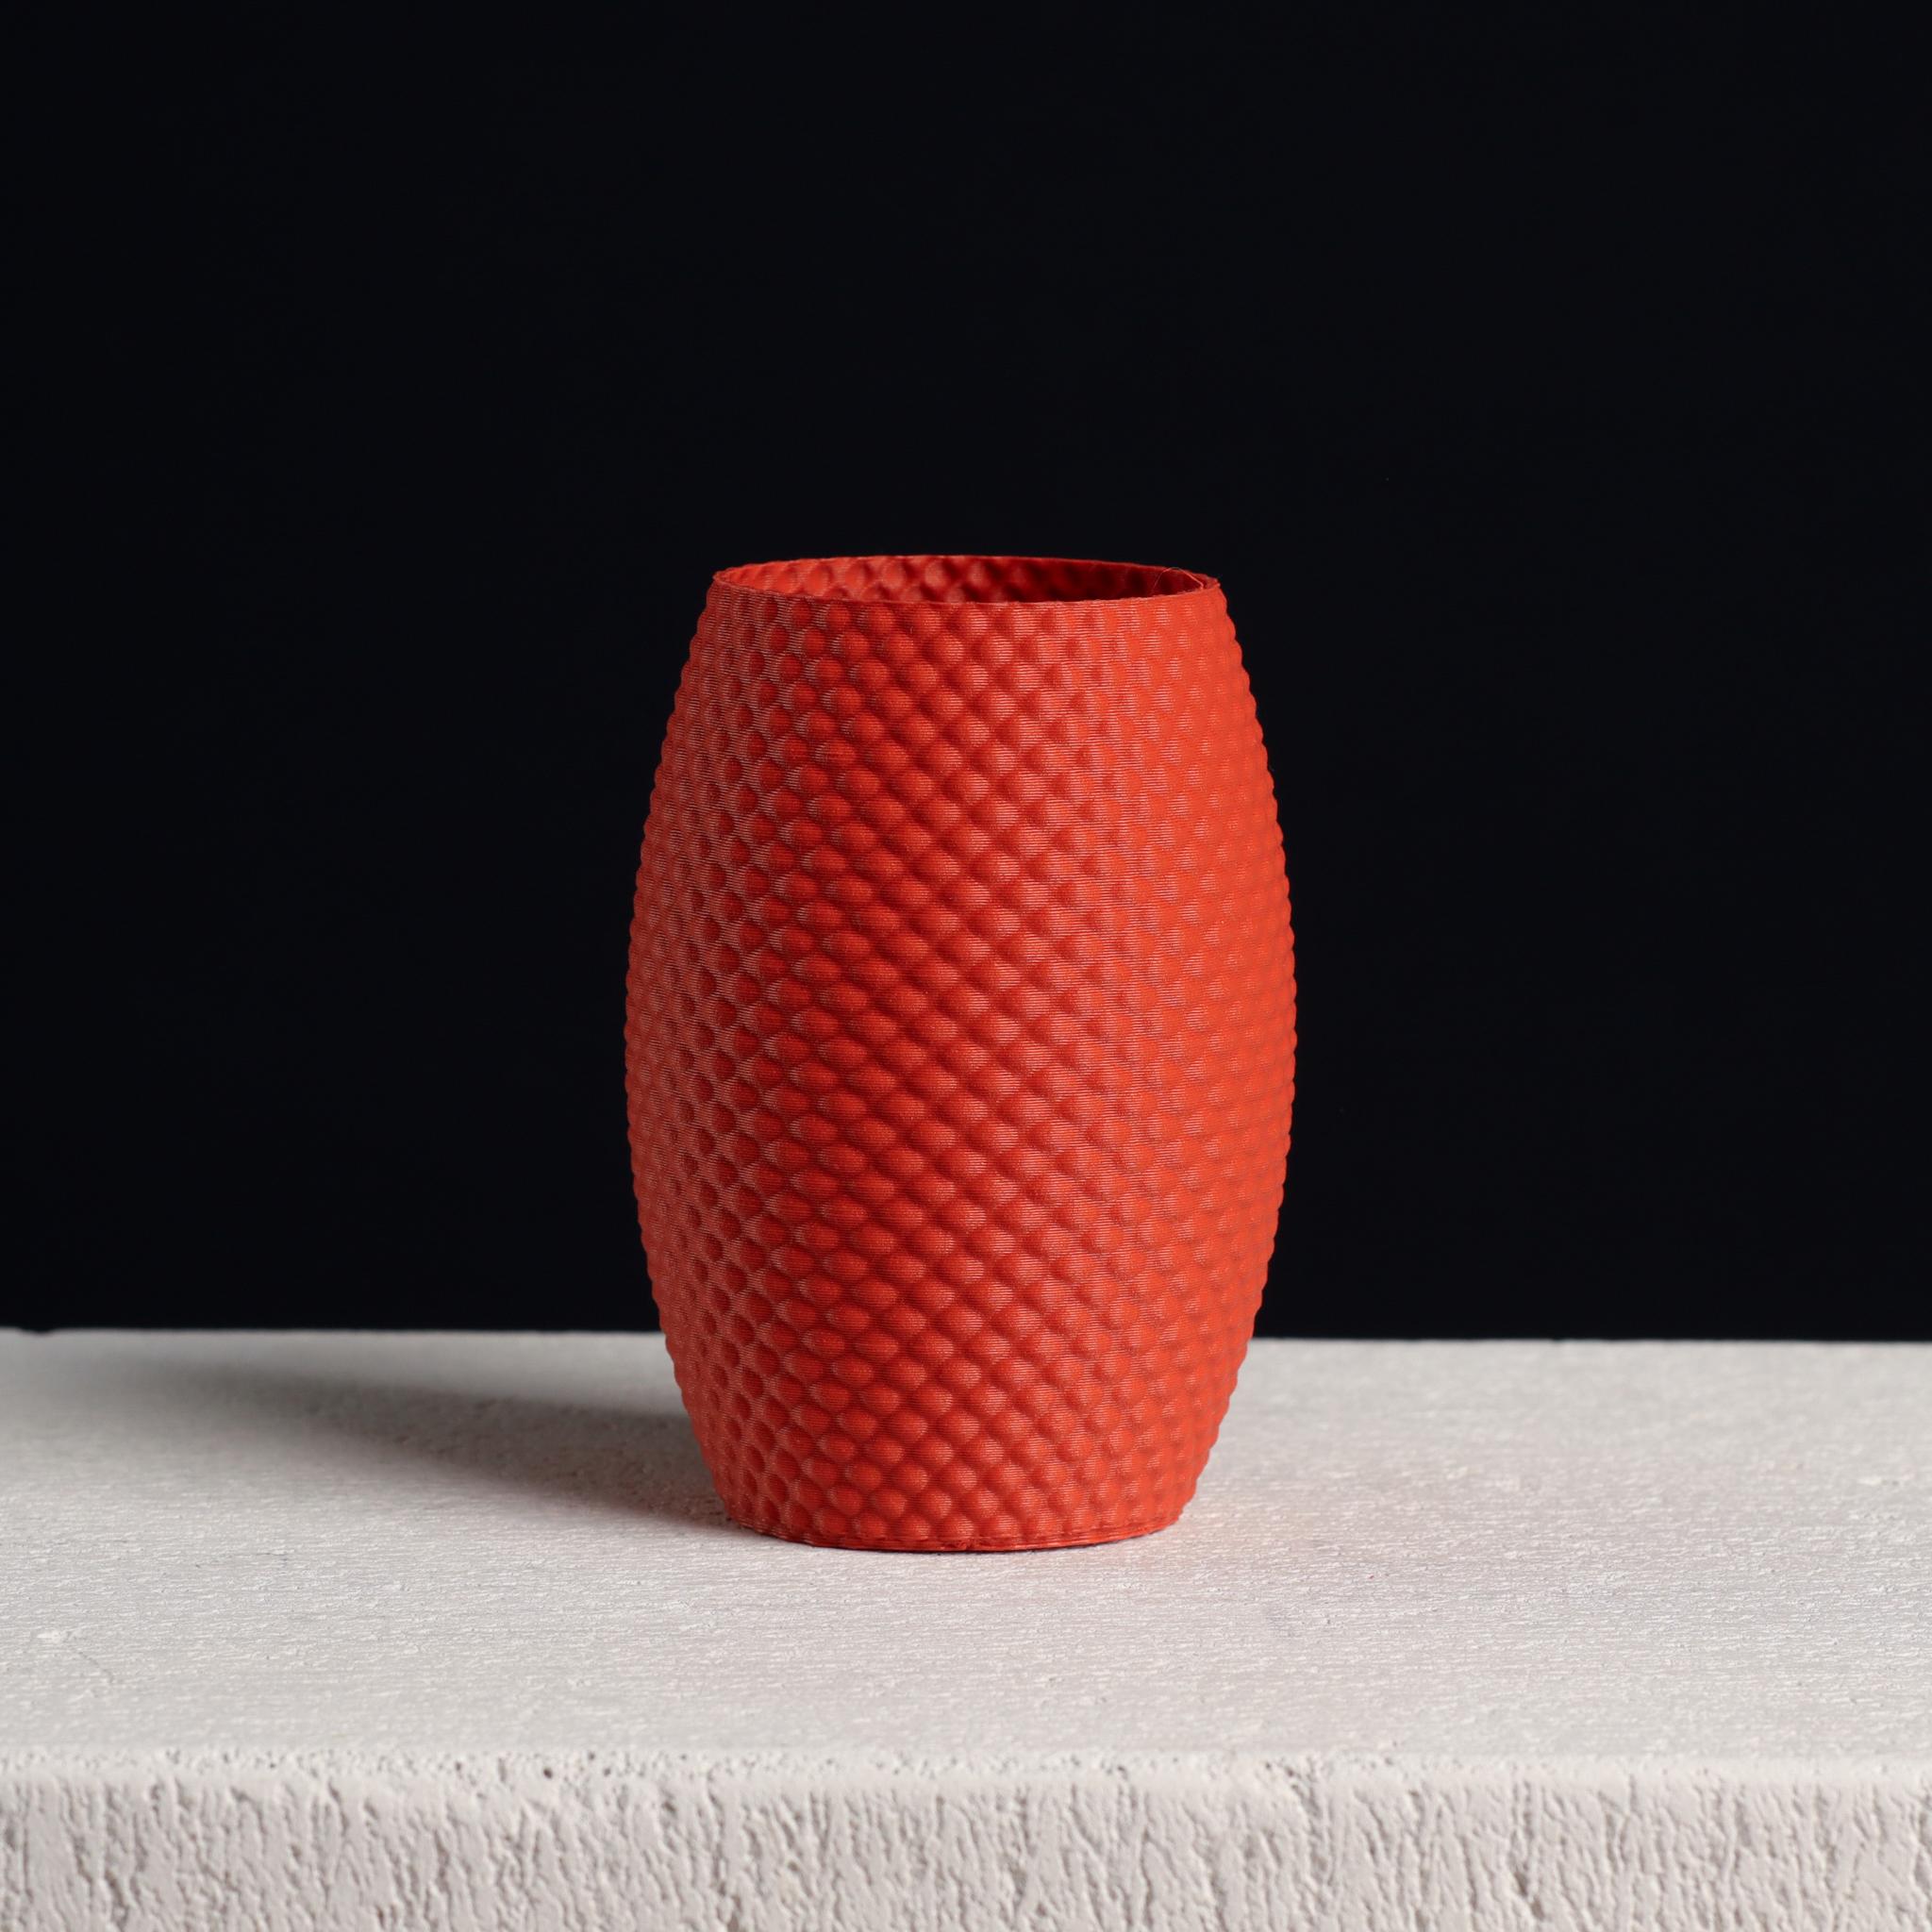  Bubble Pencil Cup, Desk Organizer (vase mode)  3d model